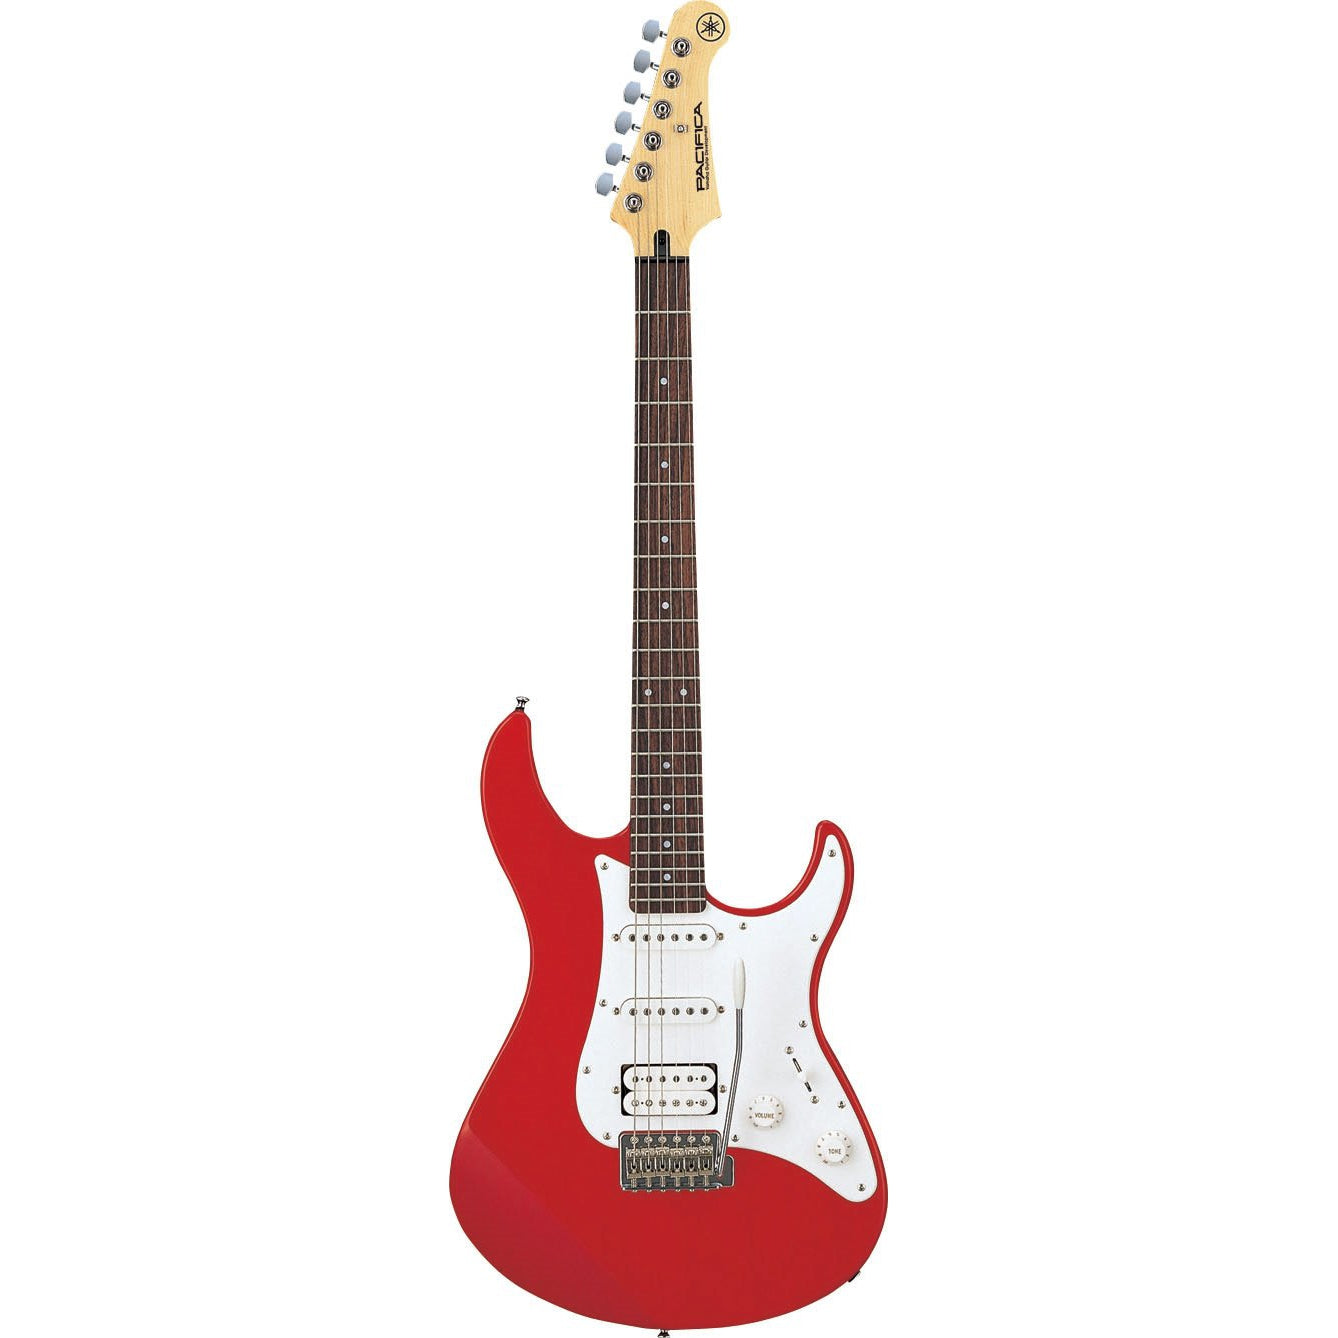 YAMAHA Pacifica 112J - Red Metallic Electric Guitar